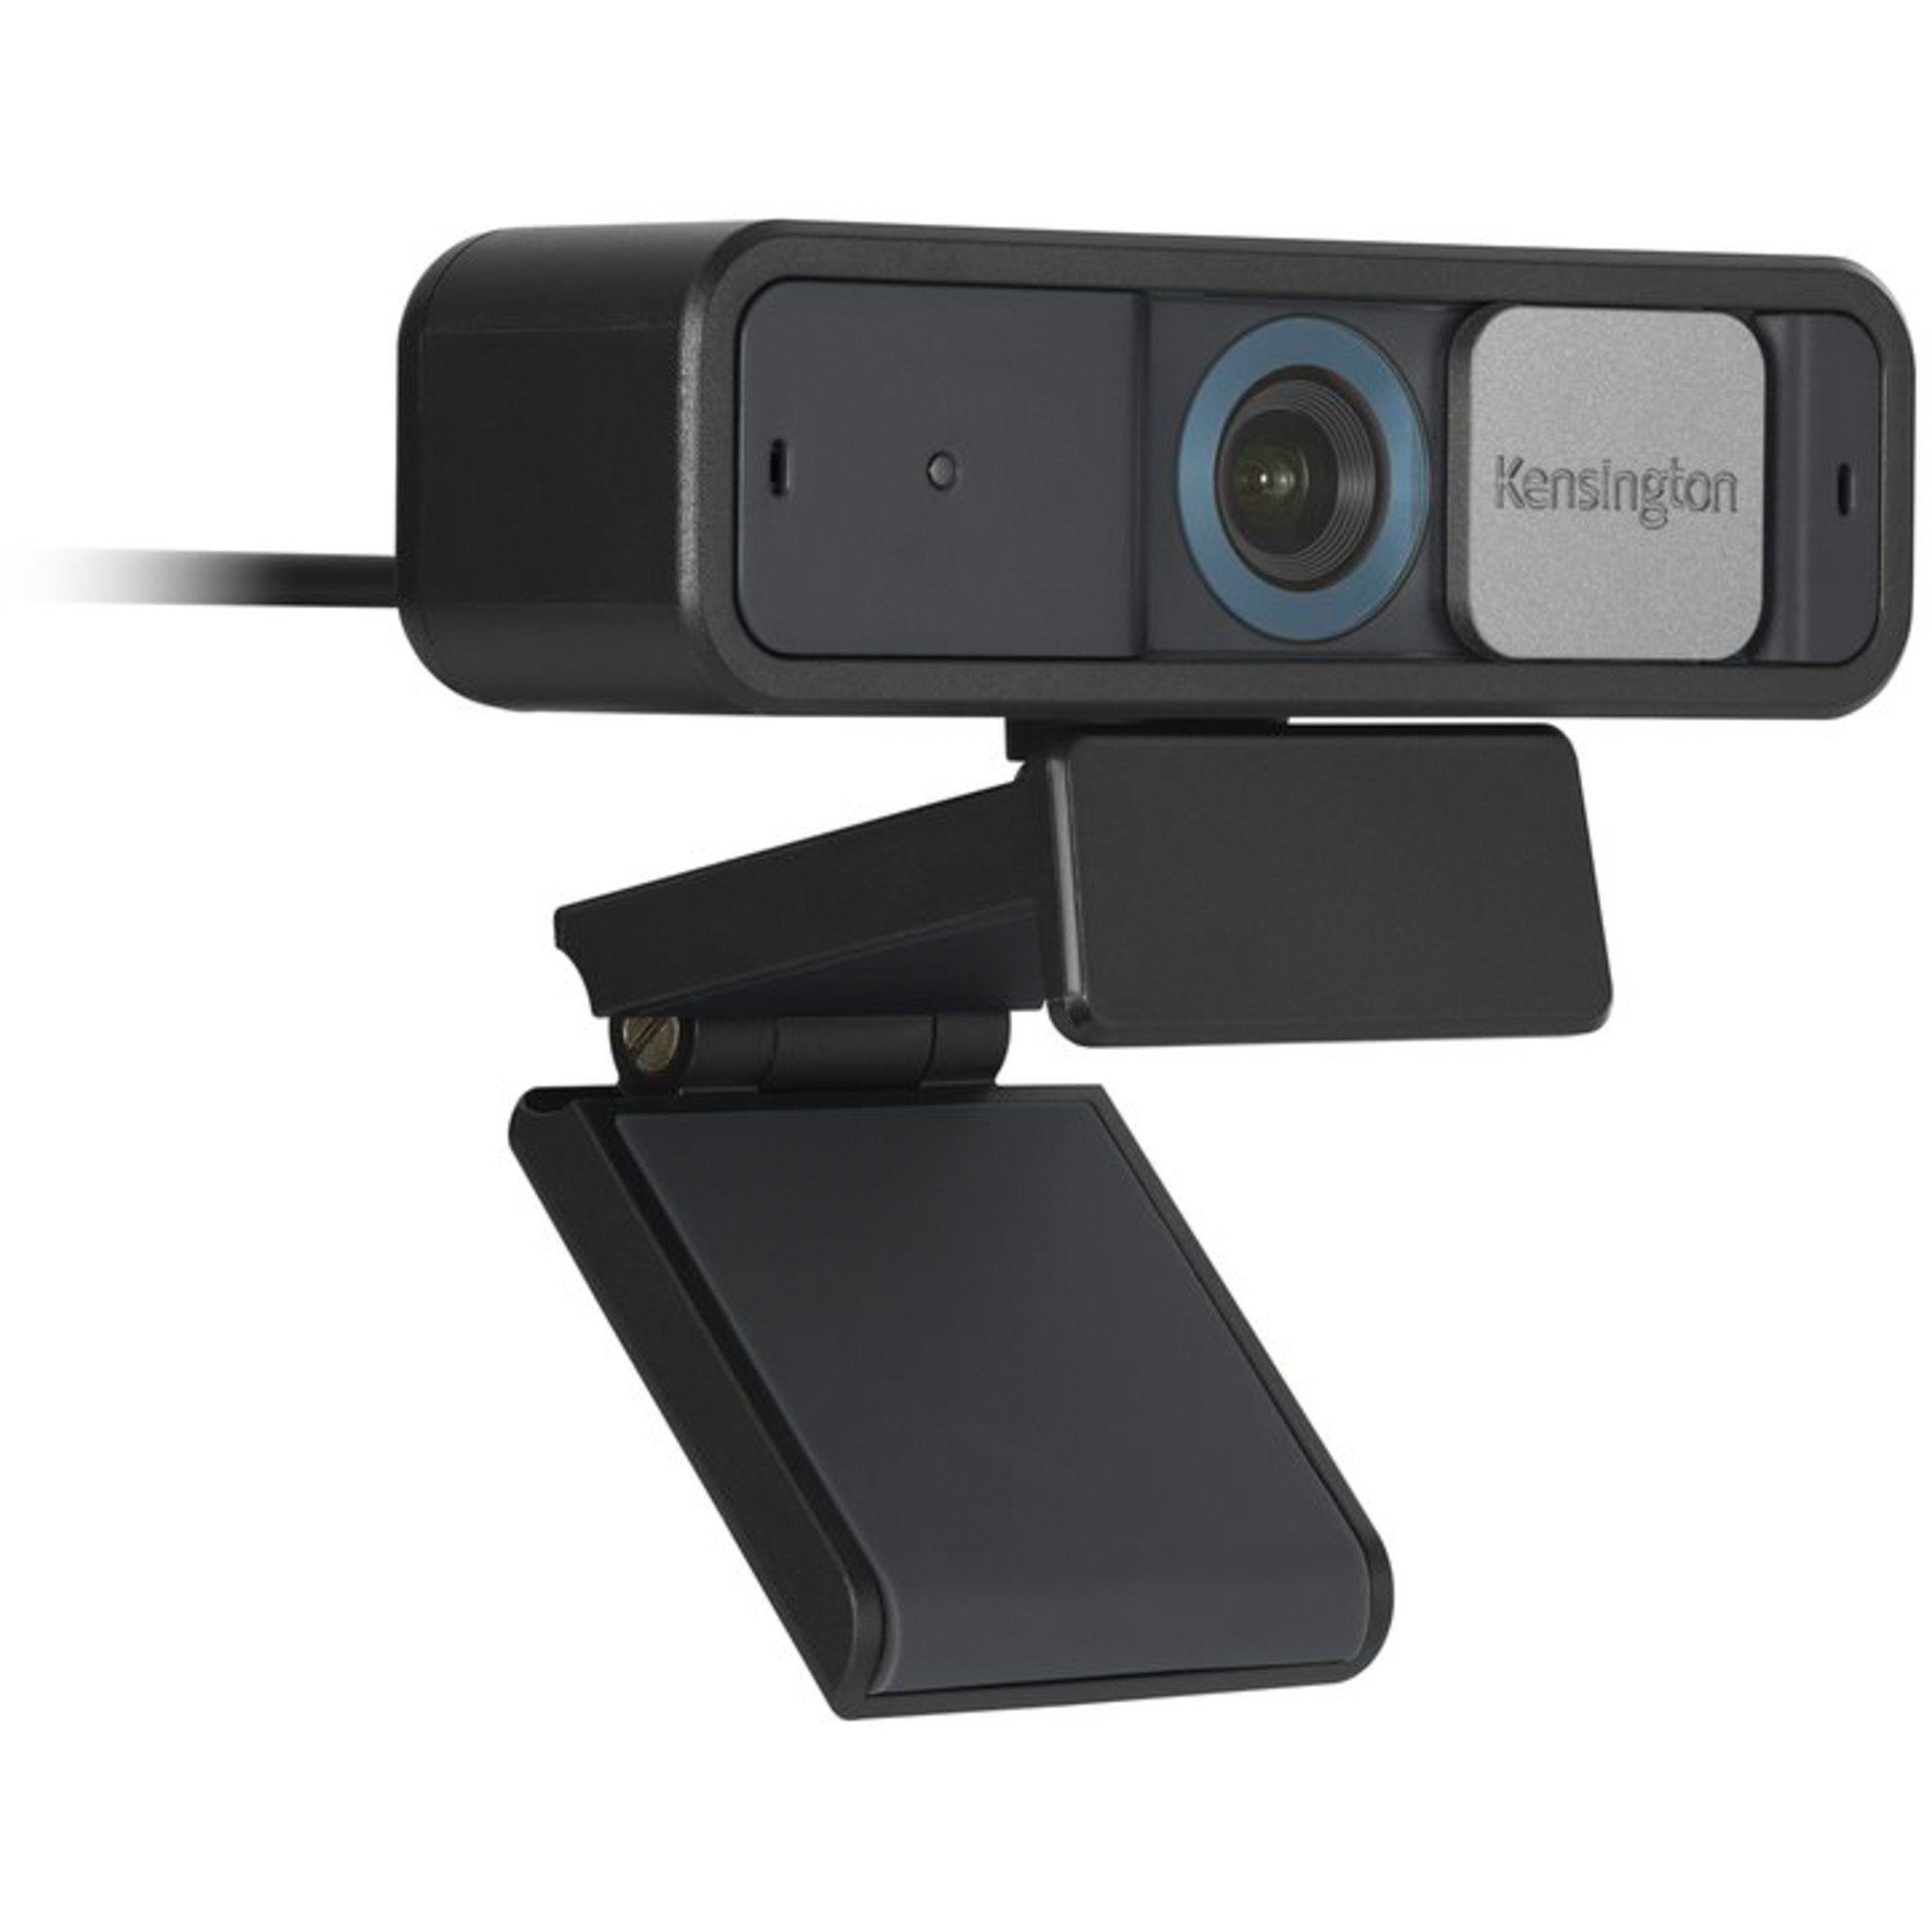 KENSINGTON Kensington Webcam Focus, 1080p Webcam Auto W2050 Pro